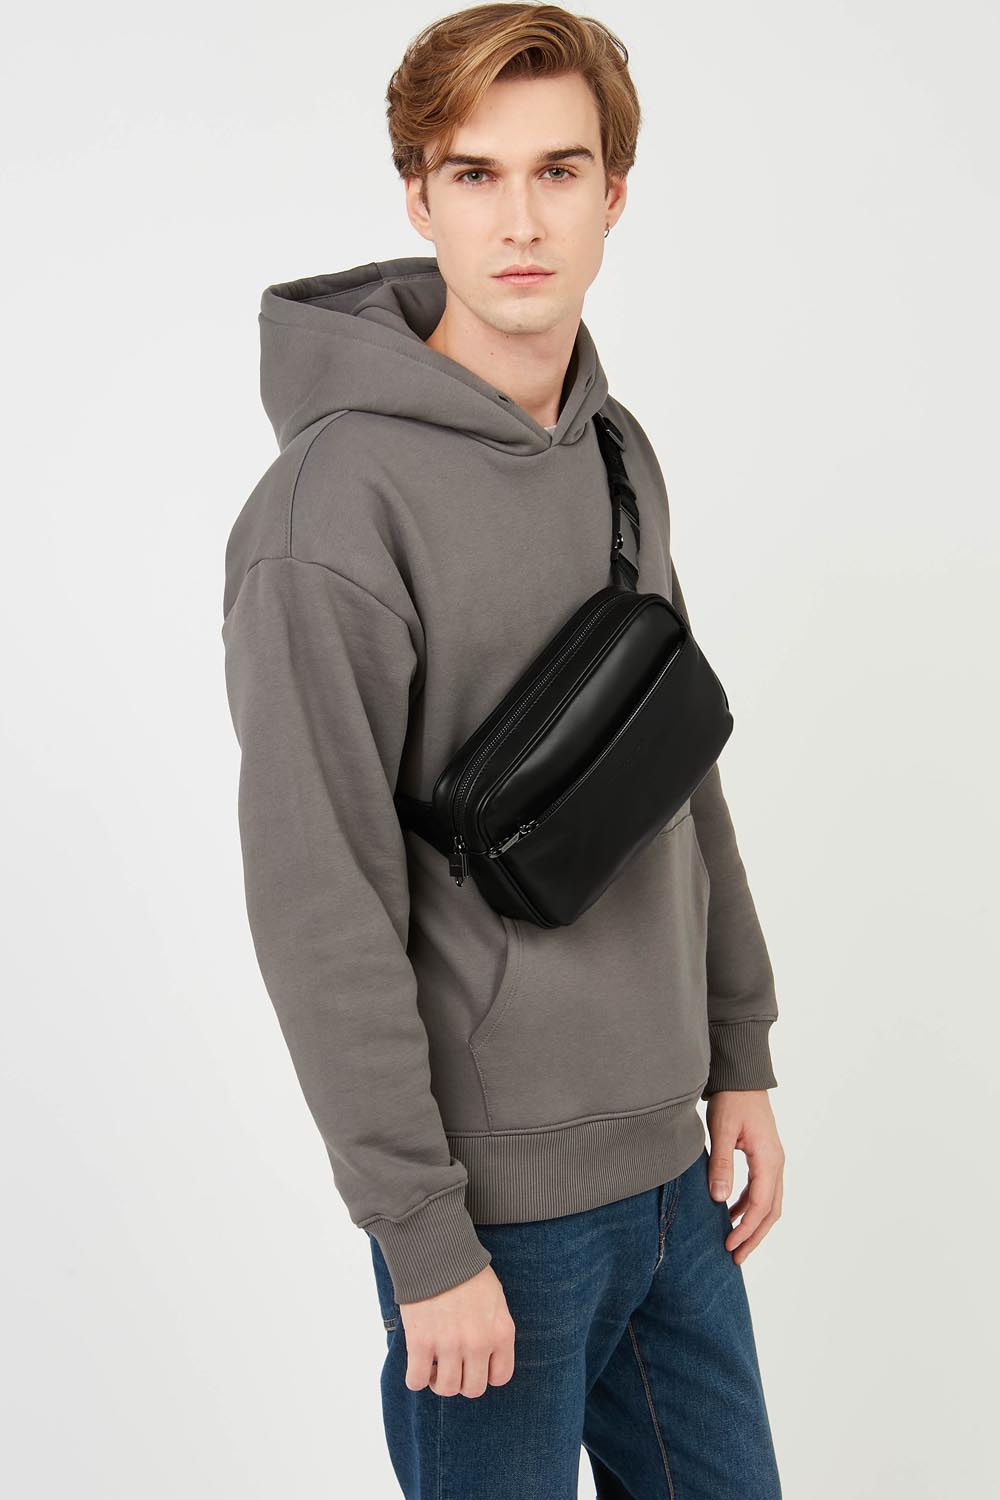 grand sac porté ceinture - capital #couleur_noir